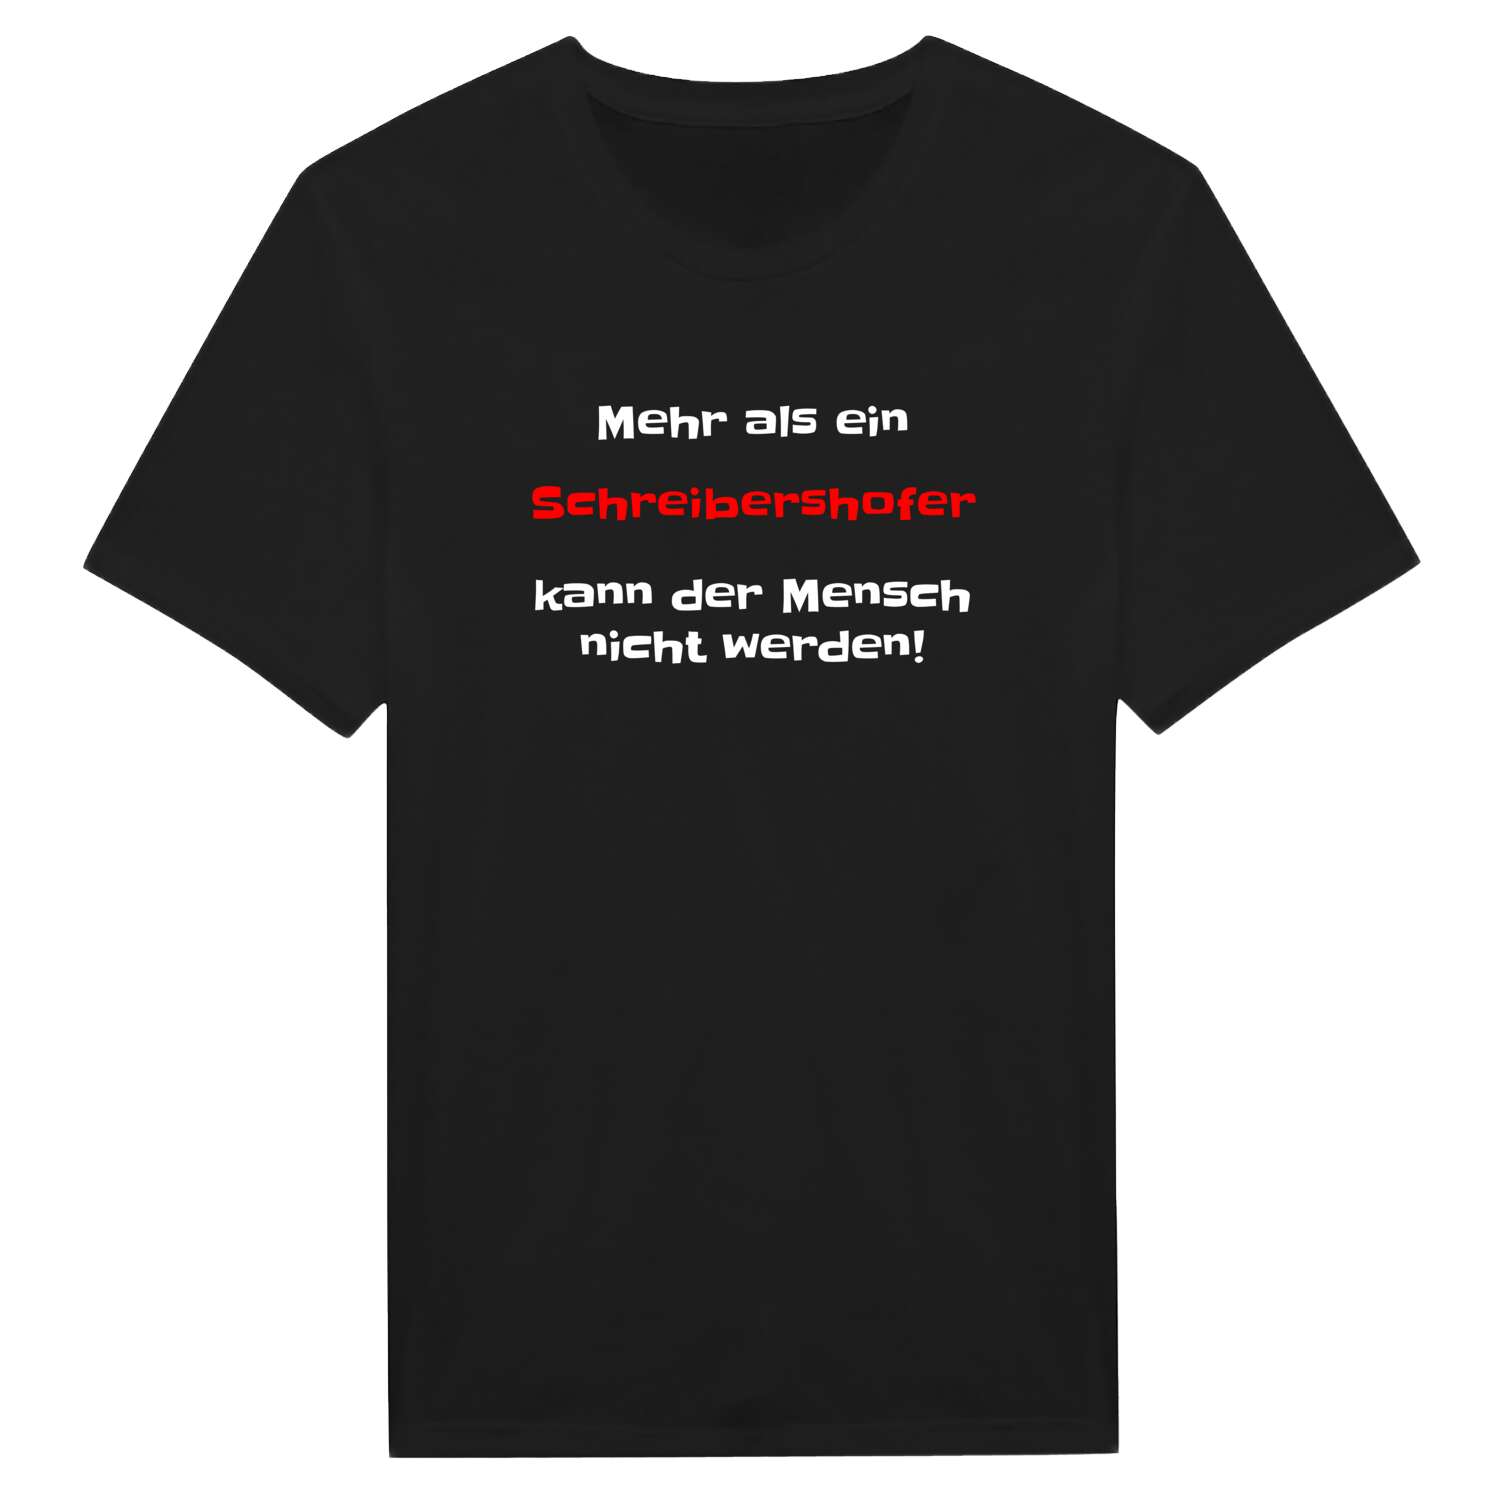 Schreibershof T-Shirt »Mehr als ein«